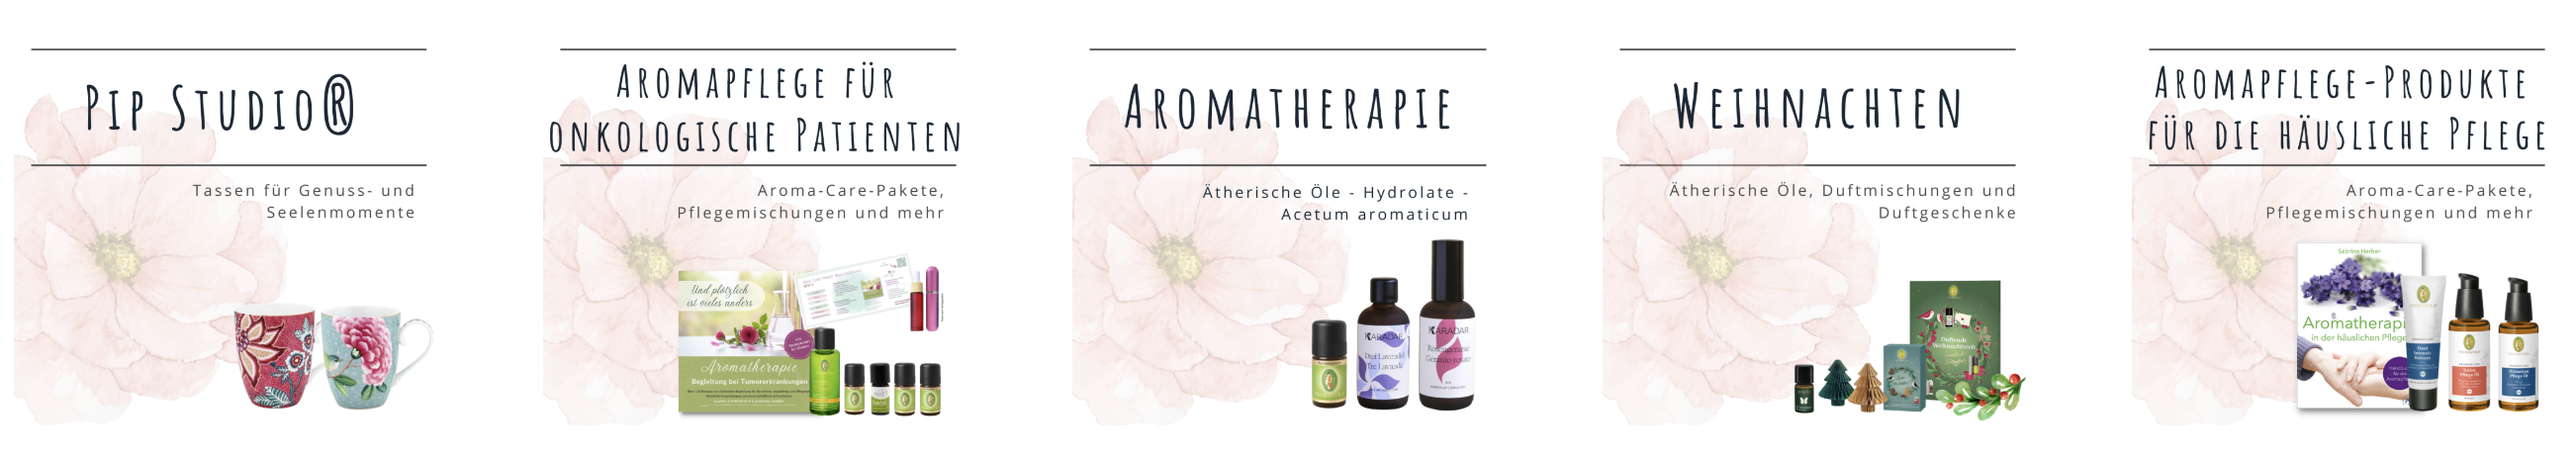 Downloads Aromatherapie